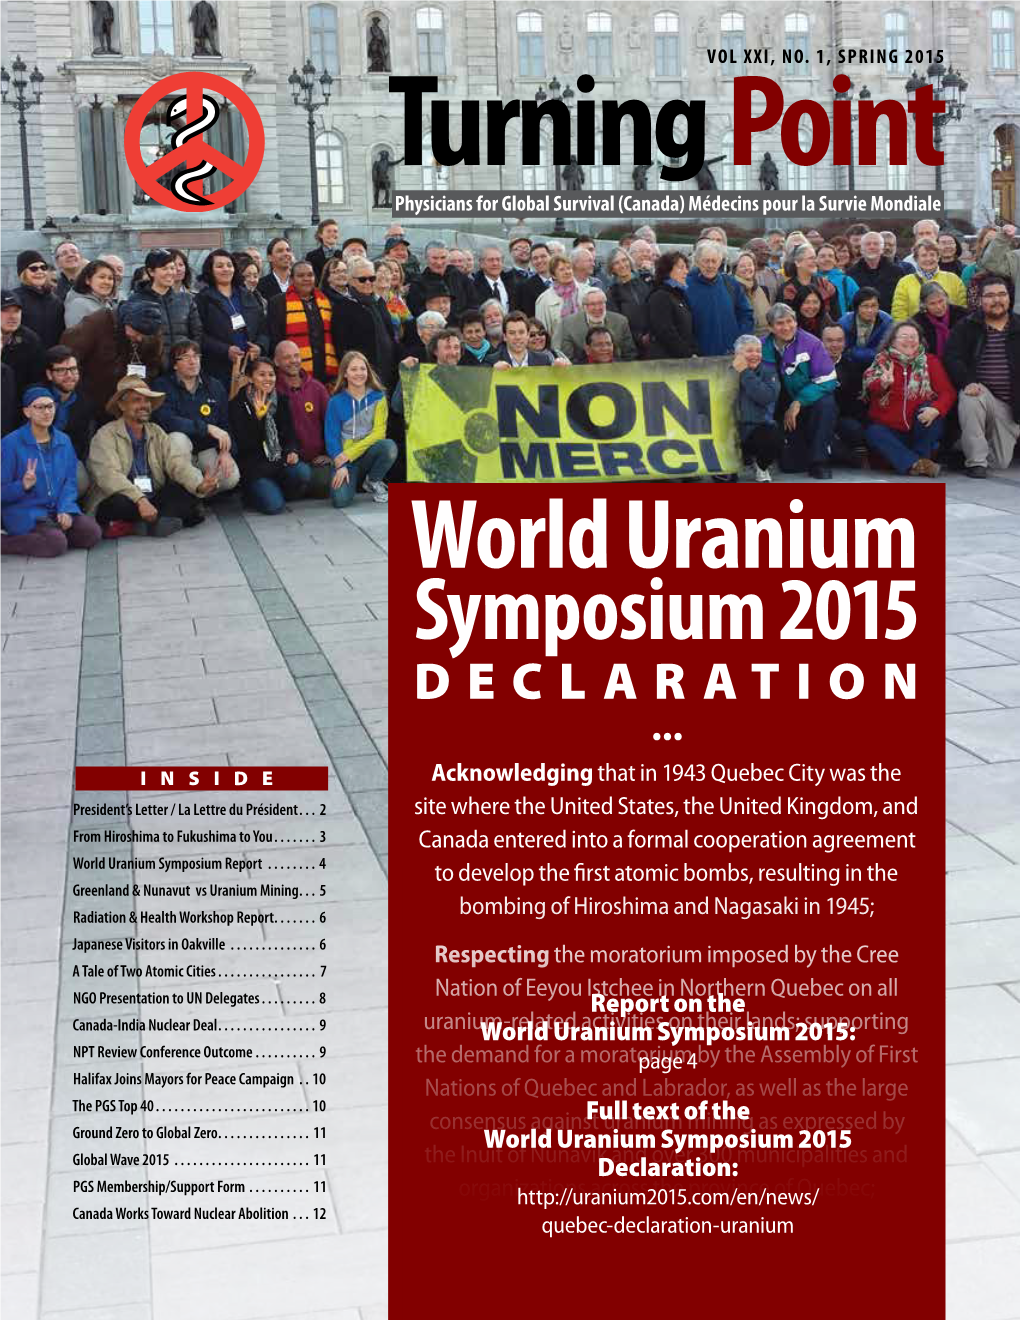 World Uranium Symposium 2015 DECLARATION